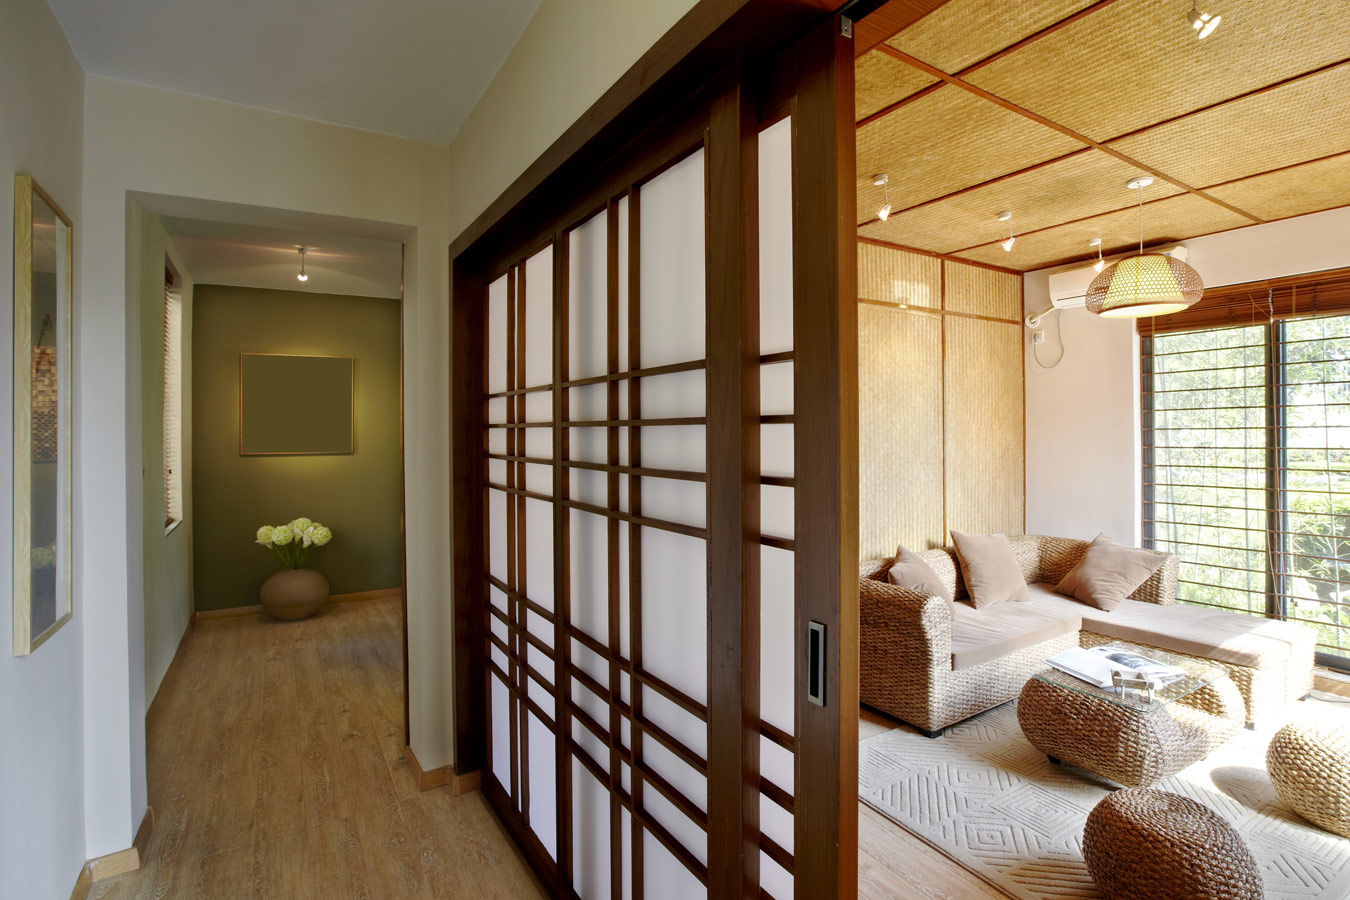 Ethnische woonkamer met rieten poefs en Japanse schuifdeur - Interieurstijlen uit de hele wereld